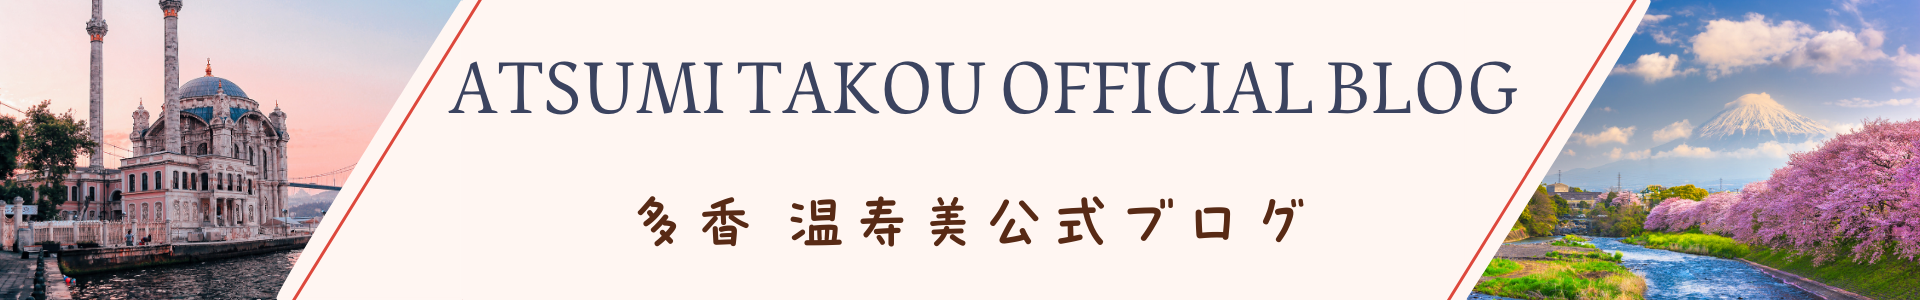 ATSUMI TAKOU OFFICIAL BLOG